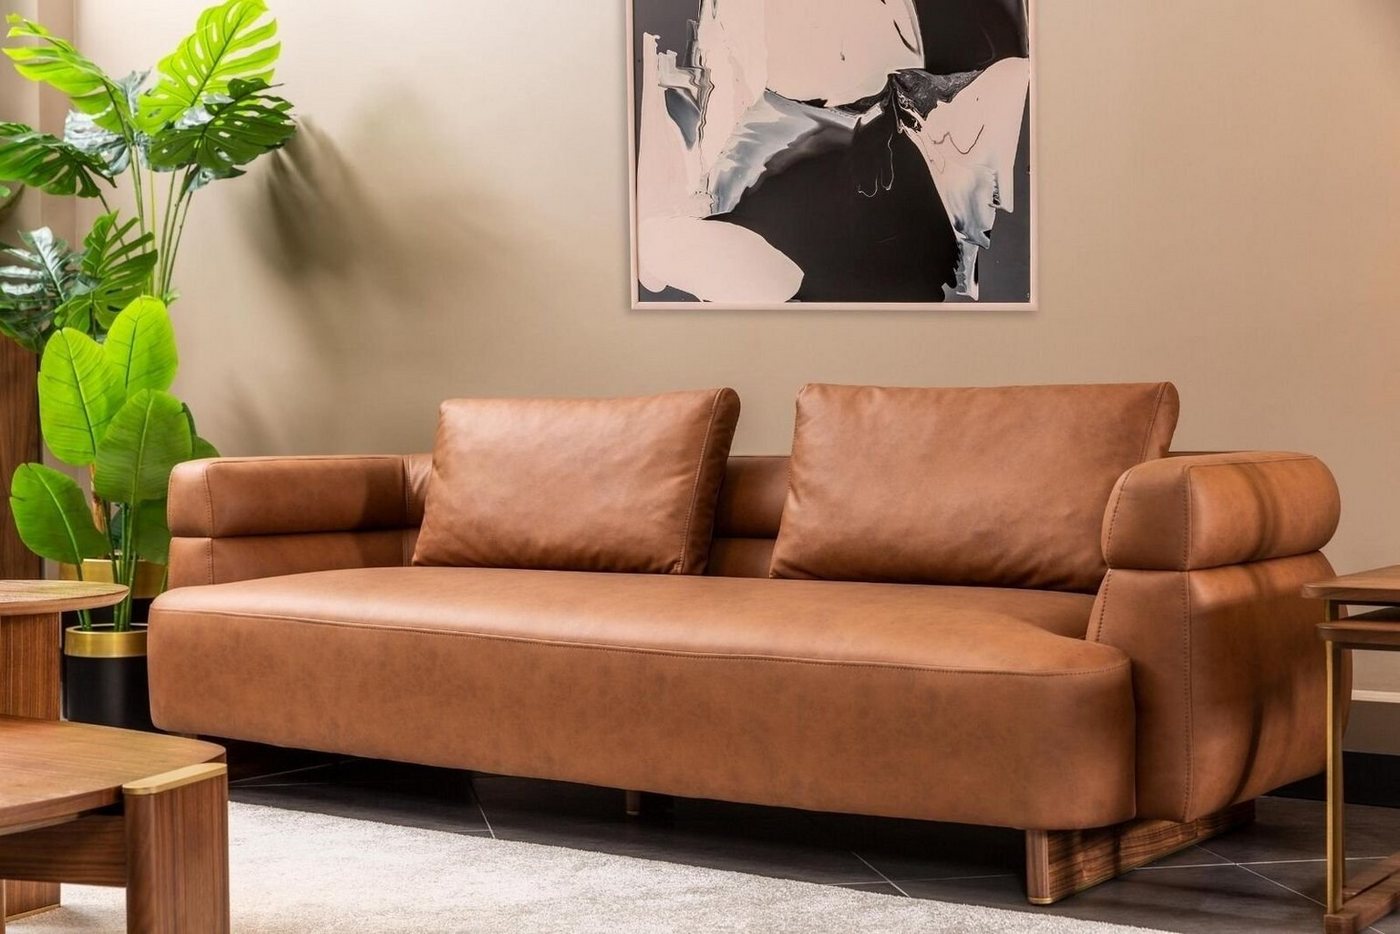 JVmoebel 3-Sitzer Dreisitzer Sofa 3 Sitzer Couch Kunstleder Braun Design Wohnzimmer Neu, 1 Teile, Made in Europa von JVmoebel